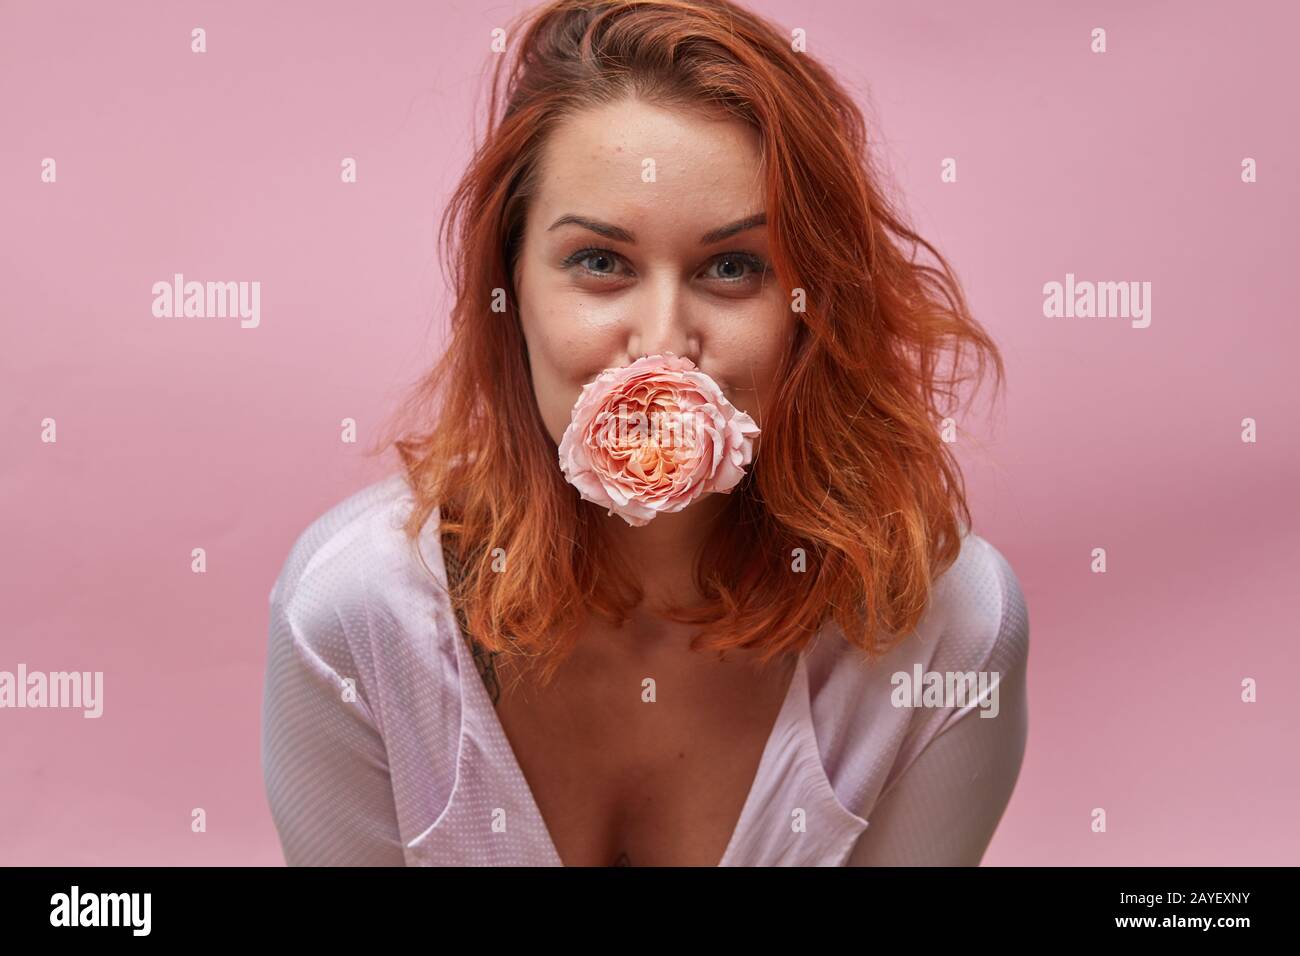 Hübsche Frau, die eine Rosenknospe im Mund um einen rosafarbenen Hintergrund hält Stockfoto